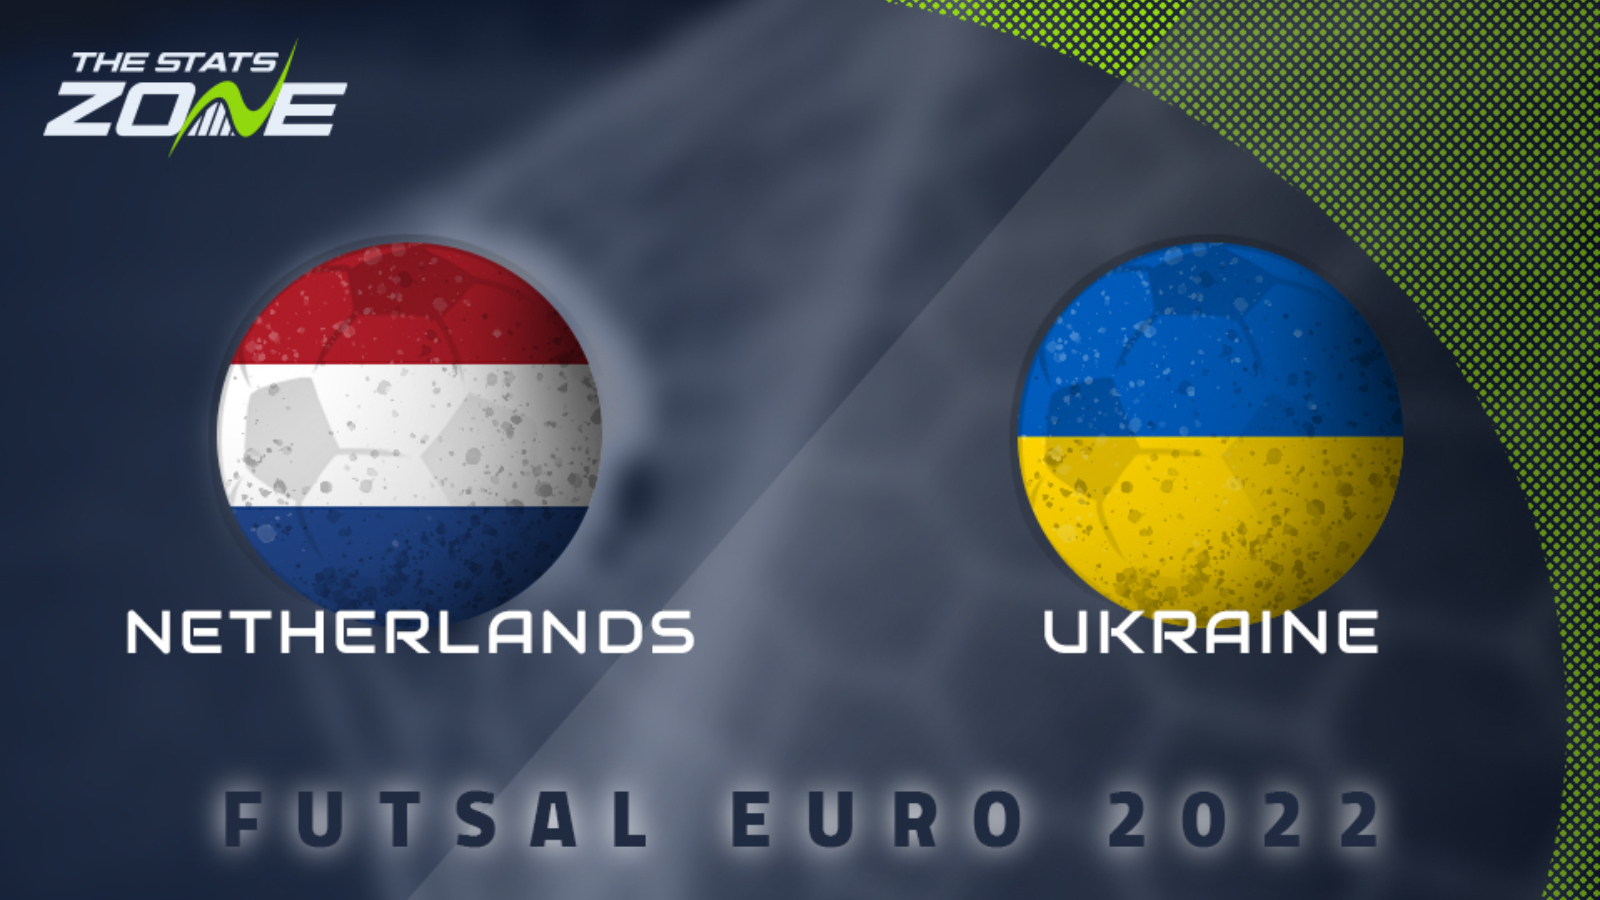 Netherlands vs ukraine